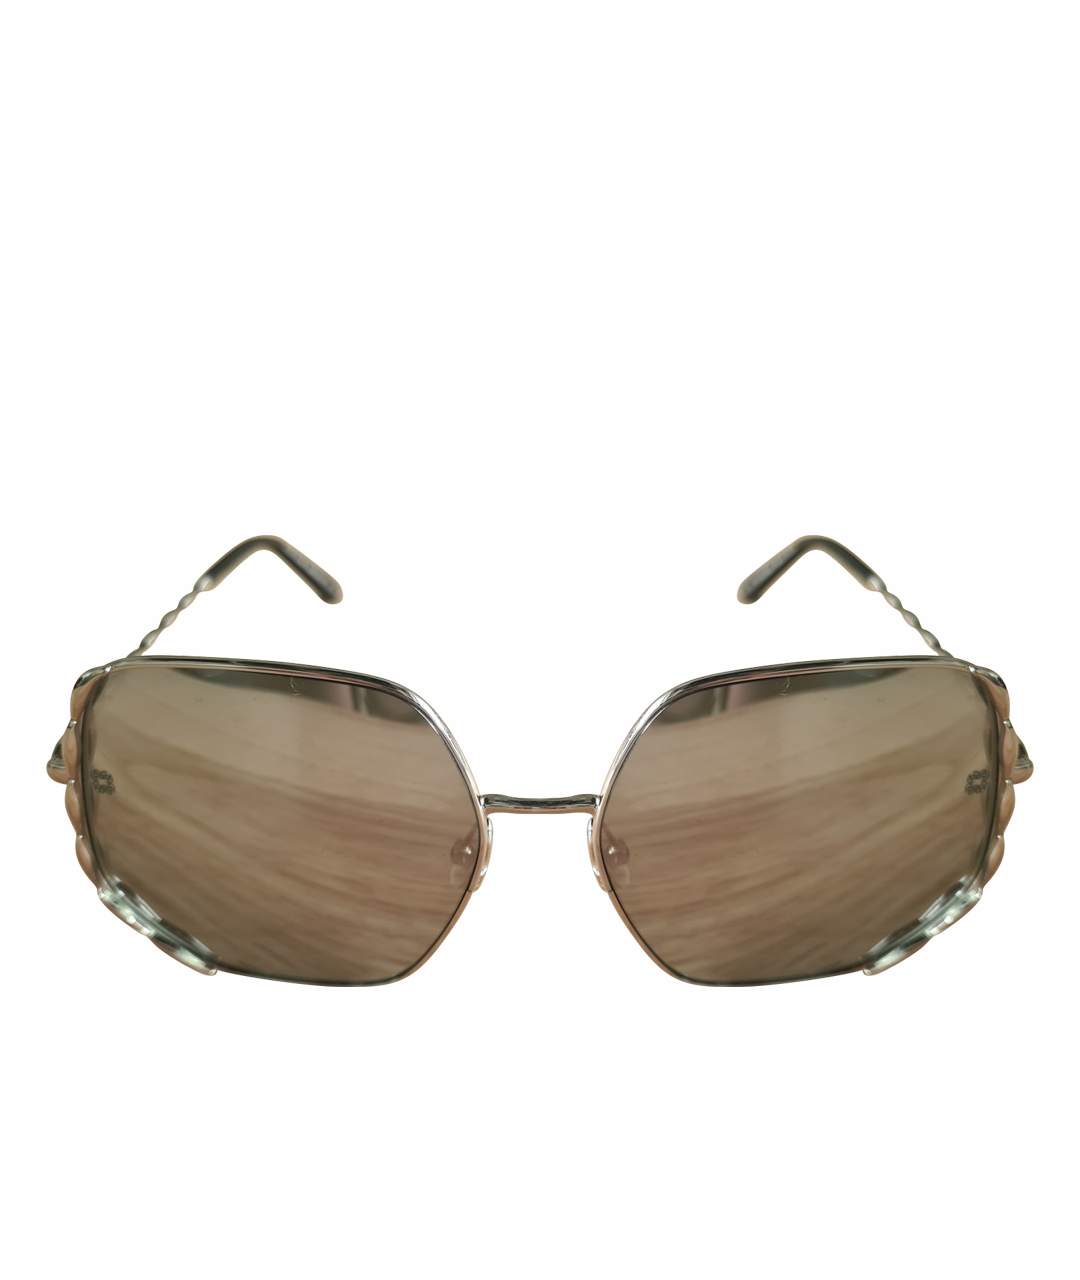 ELIE SAAB Серебряные металлические солнцезащитные очки, фото 1